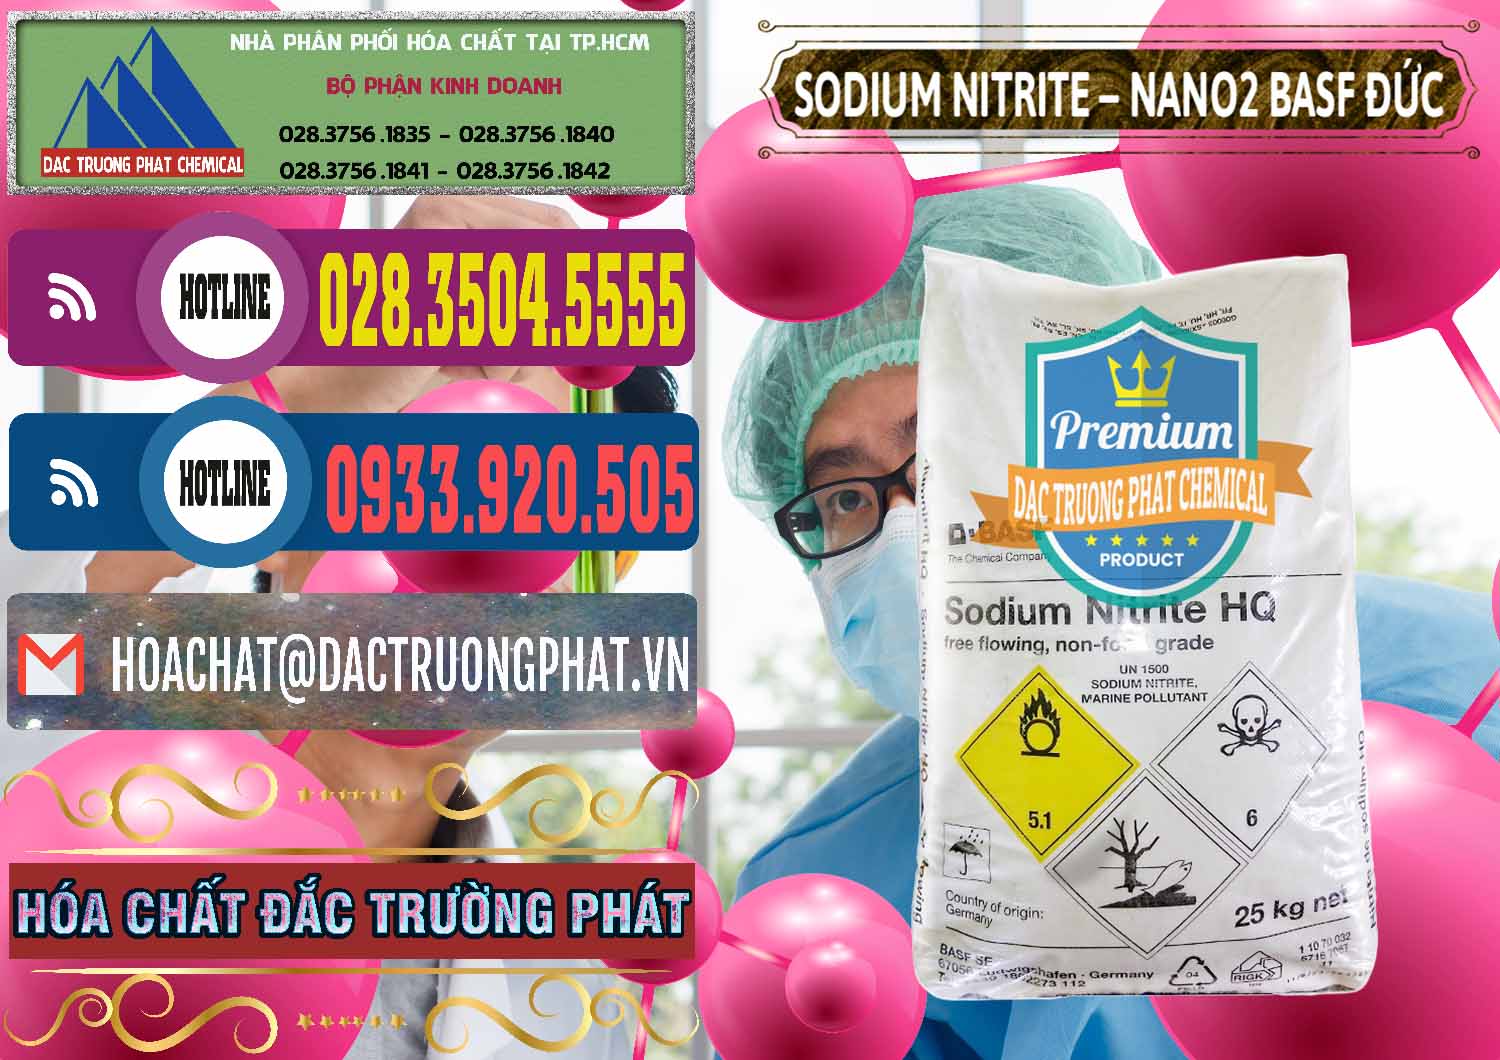 Nơi nhập khẩu và bán Sodium Nitrite - NANO2 Đức BASF Germany - 0148 - Cty chuyên phân phối ( nhập khẩu ) hóa chất tại TP.HCM - muabanhoachat.com.vn